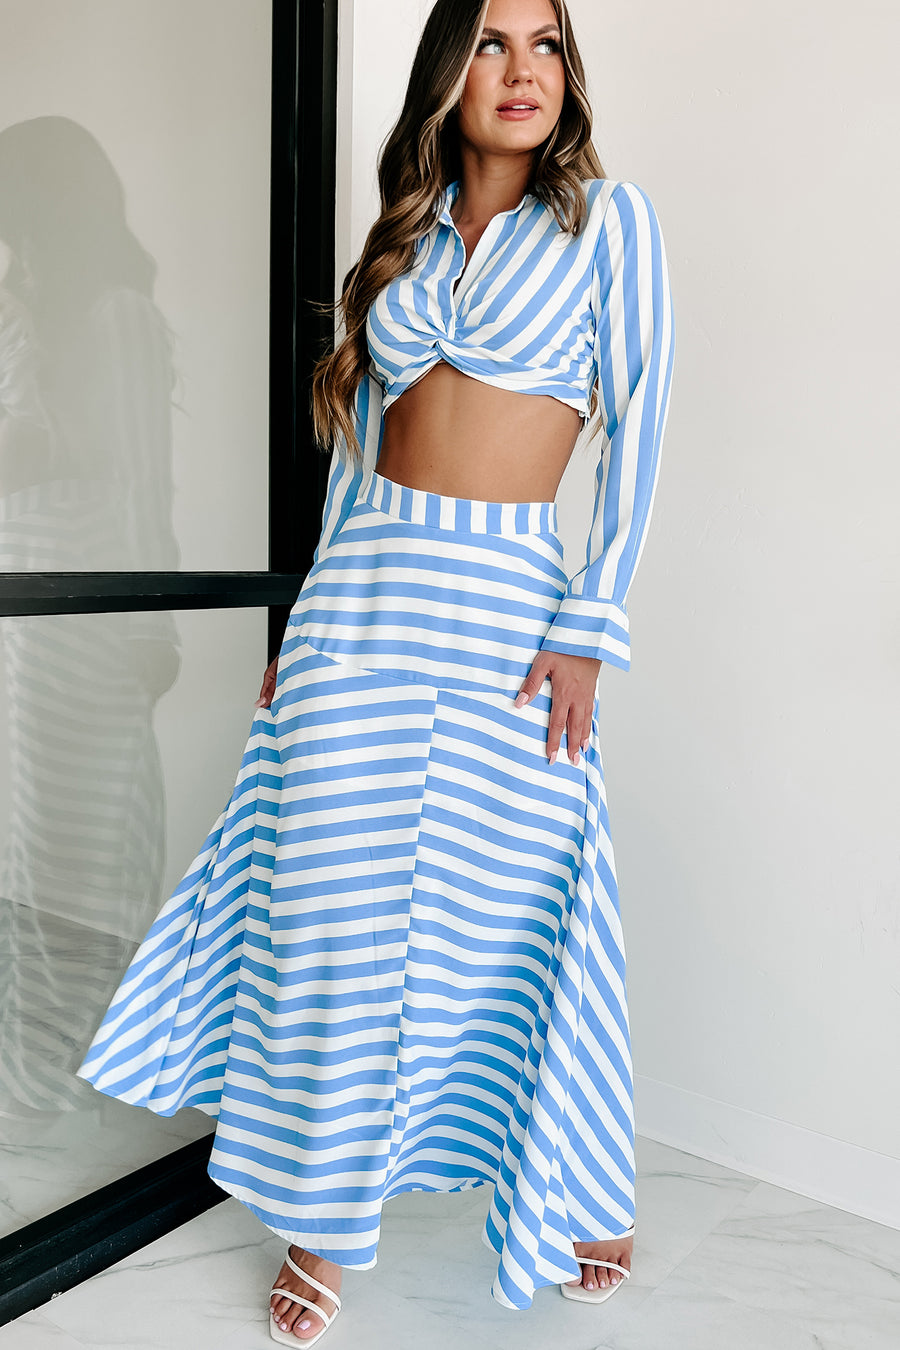 Travel Far Away Striped Two Piece Skirt Set (White/Blue) - NanaMacs